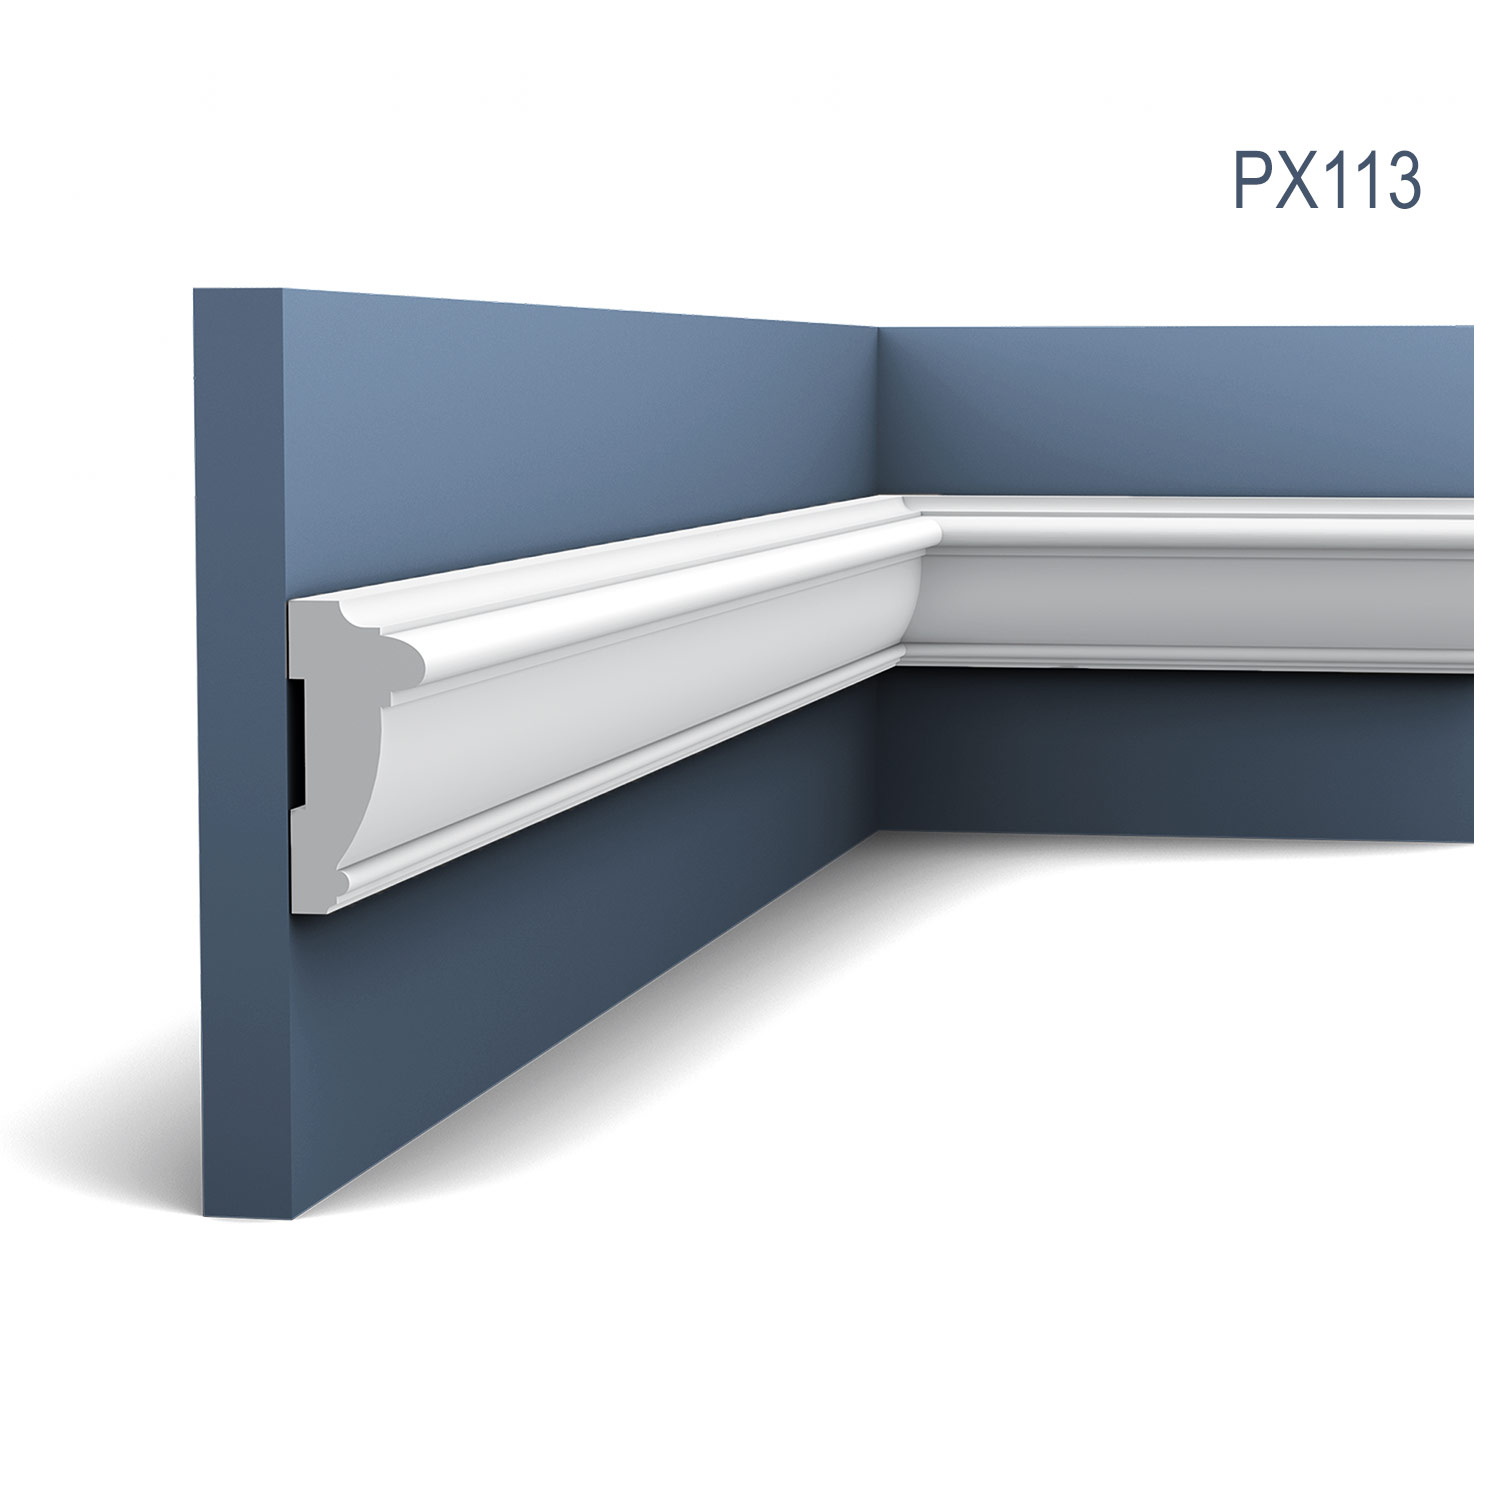 Brau intermediar PX113, profil decorativ multifunctional, pentru perete, alba, vopsibila, rigida, calitate excelenta, Belgia, din Duropolimer, L 200 x H 6 x L 2,7 cm